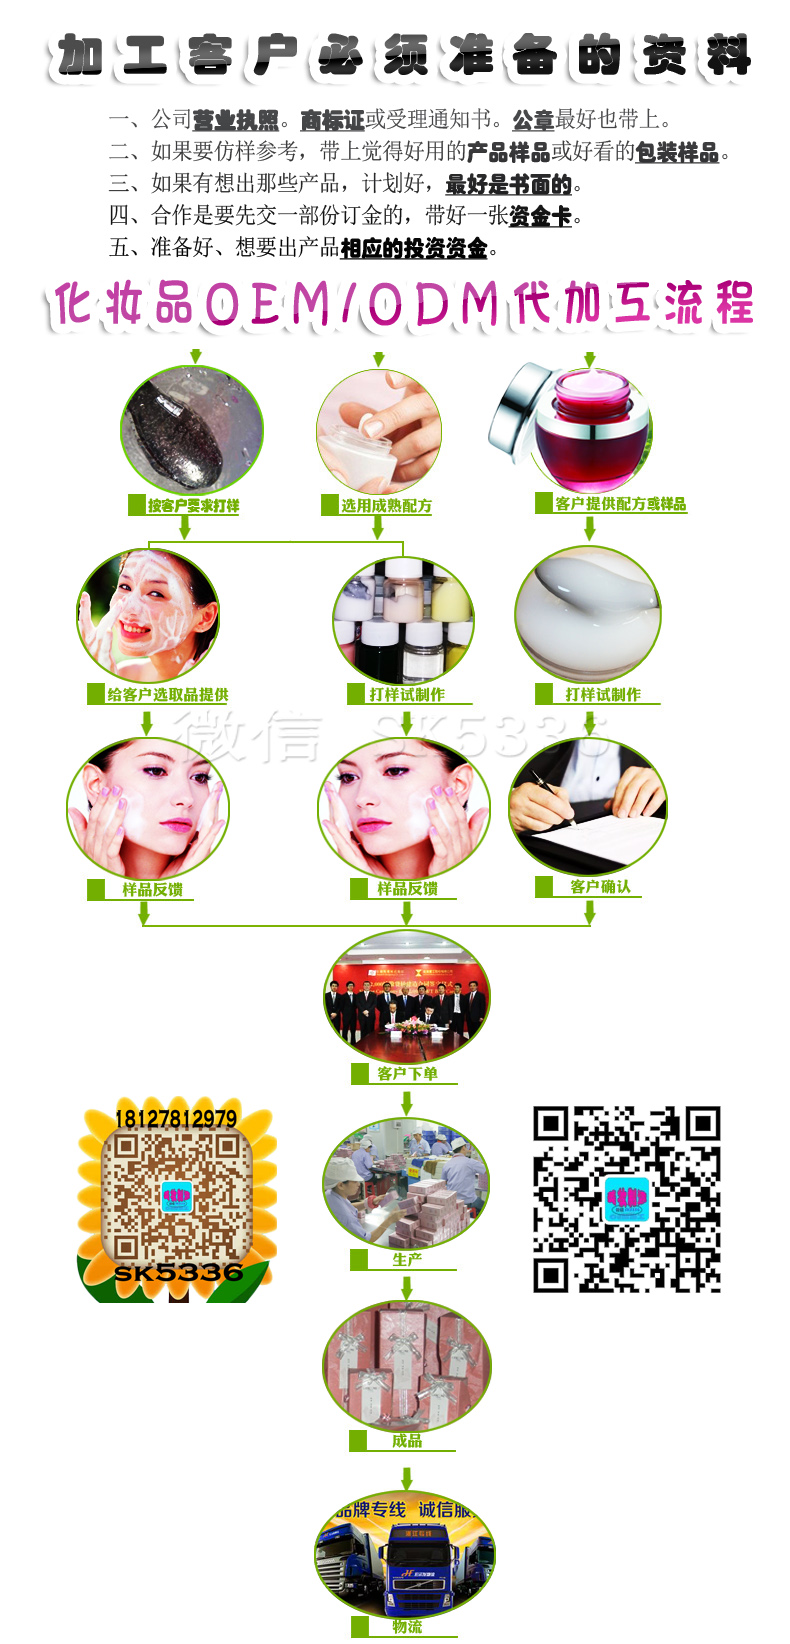 加工服务流程-宝生堂化妆品厂家_化妆品OEM_化妆品加工_化妆品ODM图片